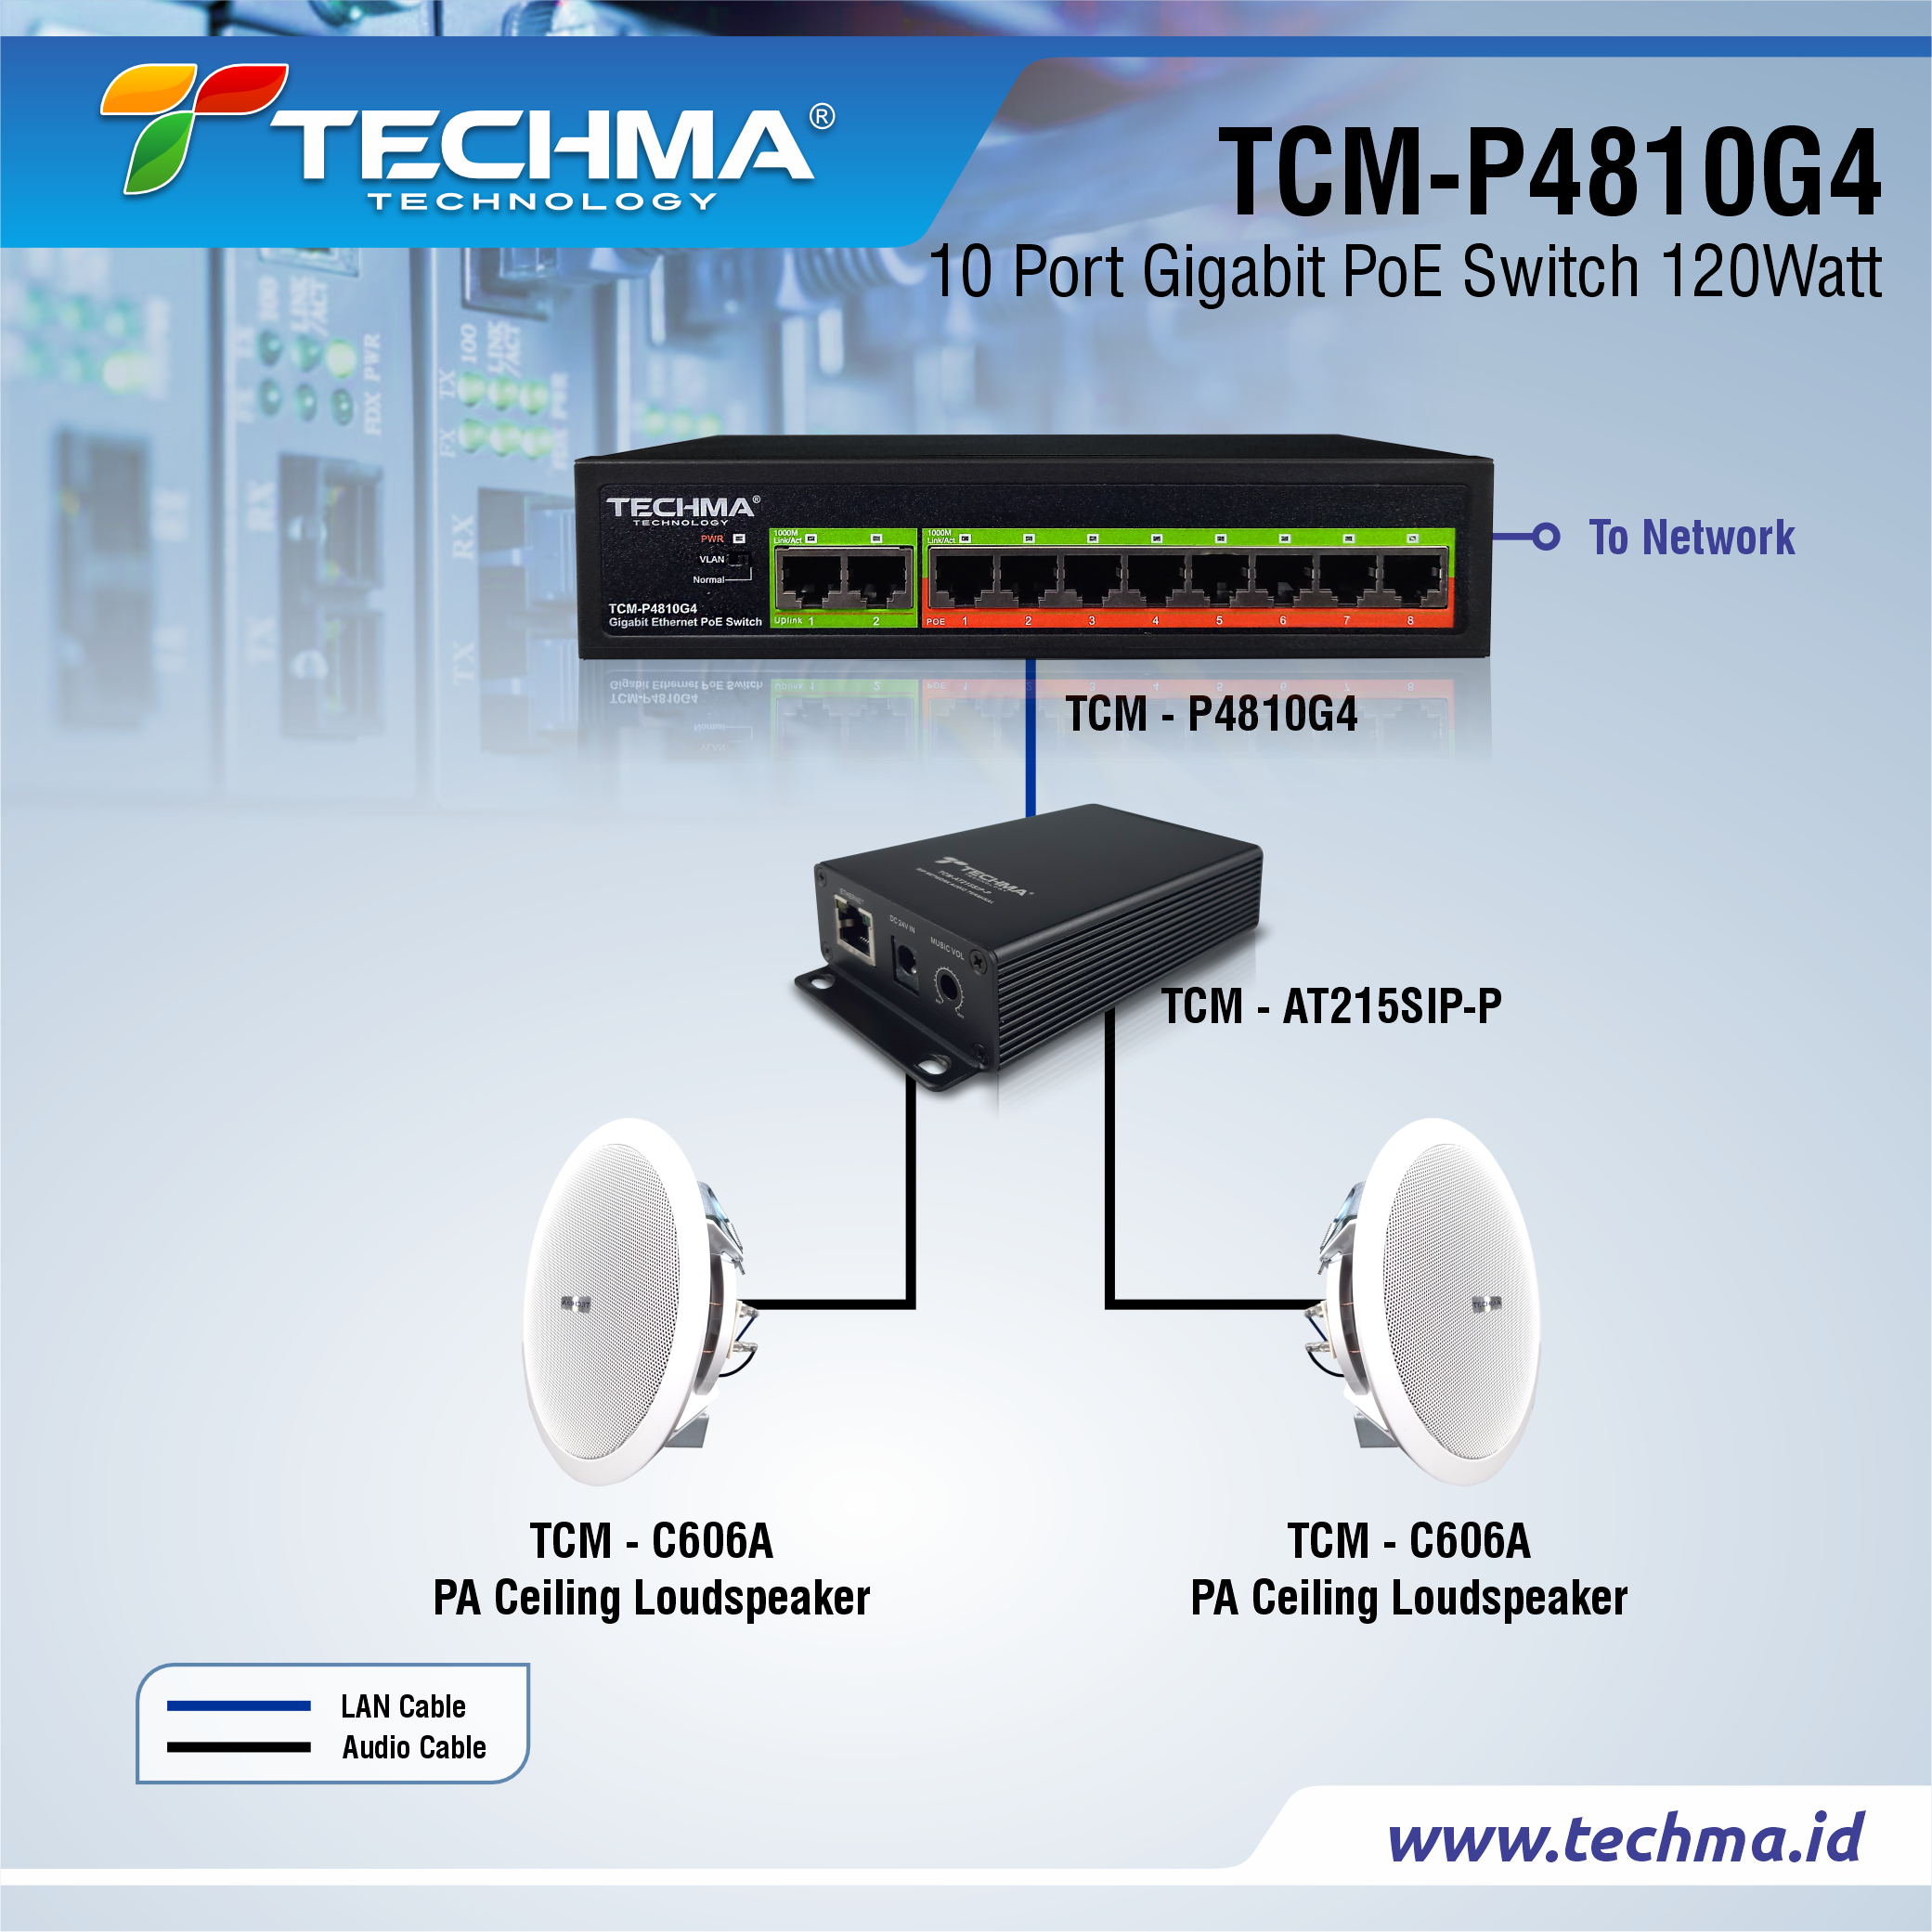 TCM-P4810G4 web 5